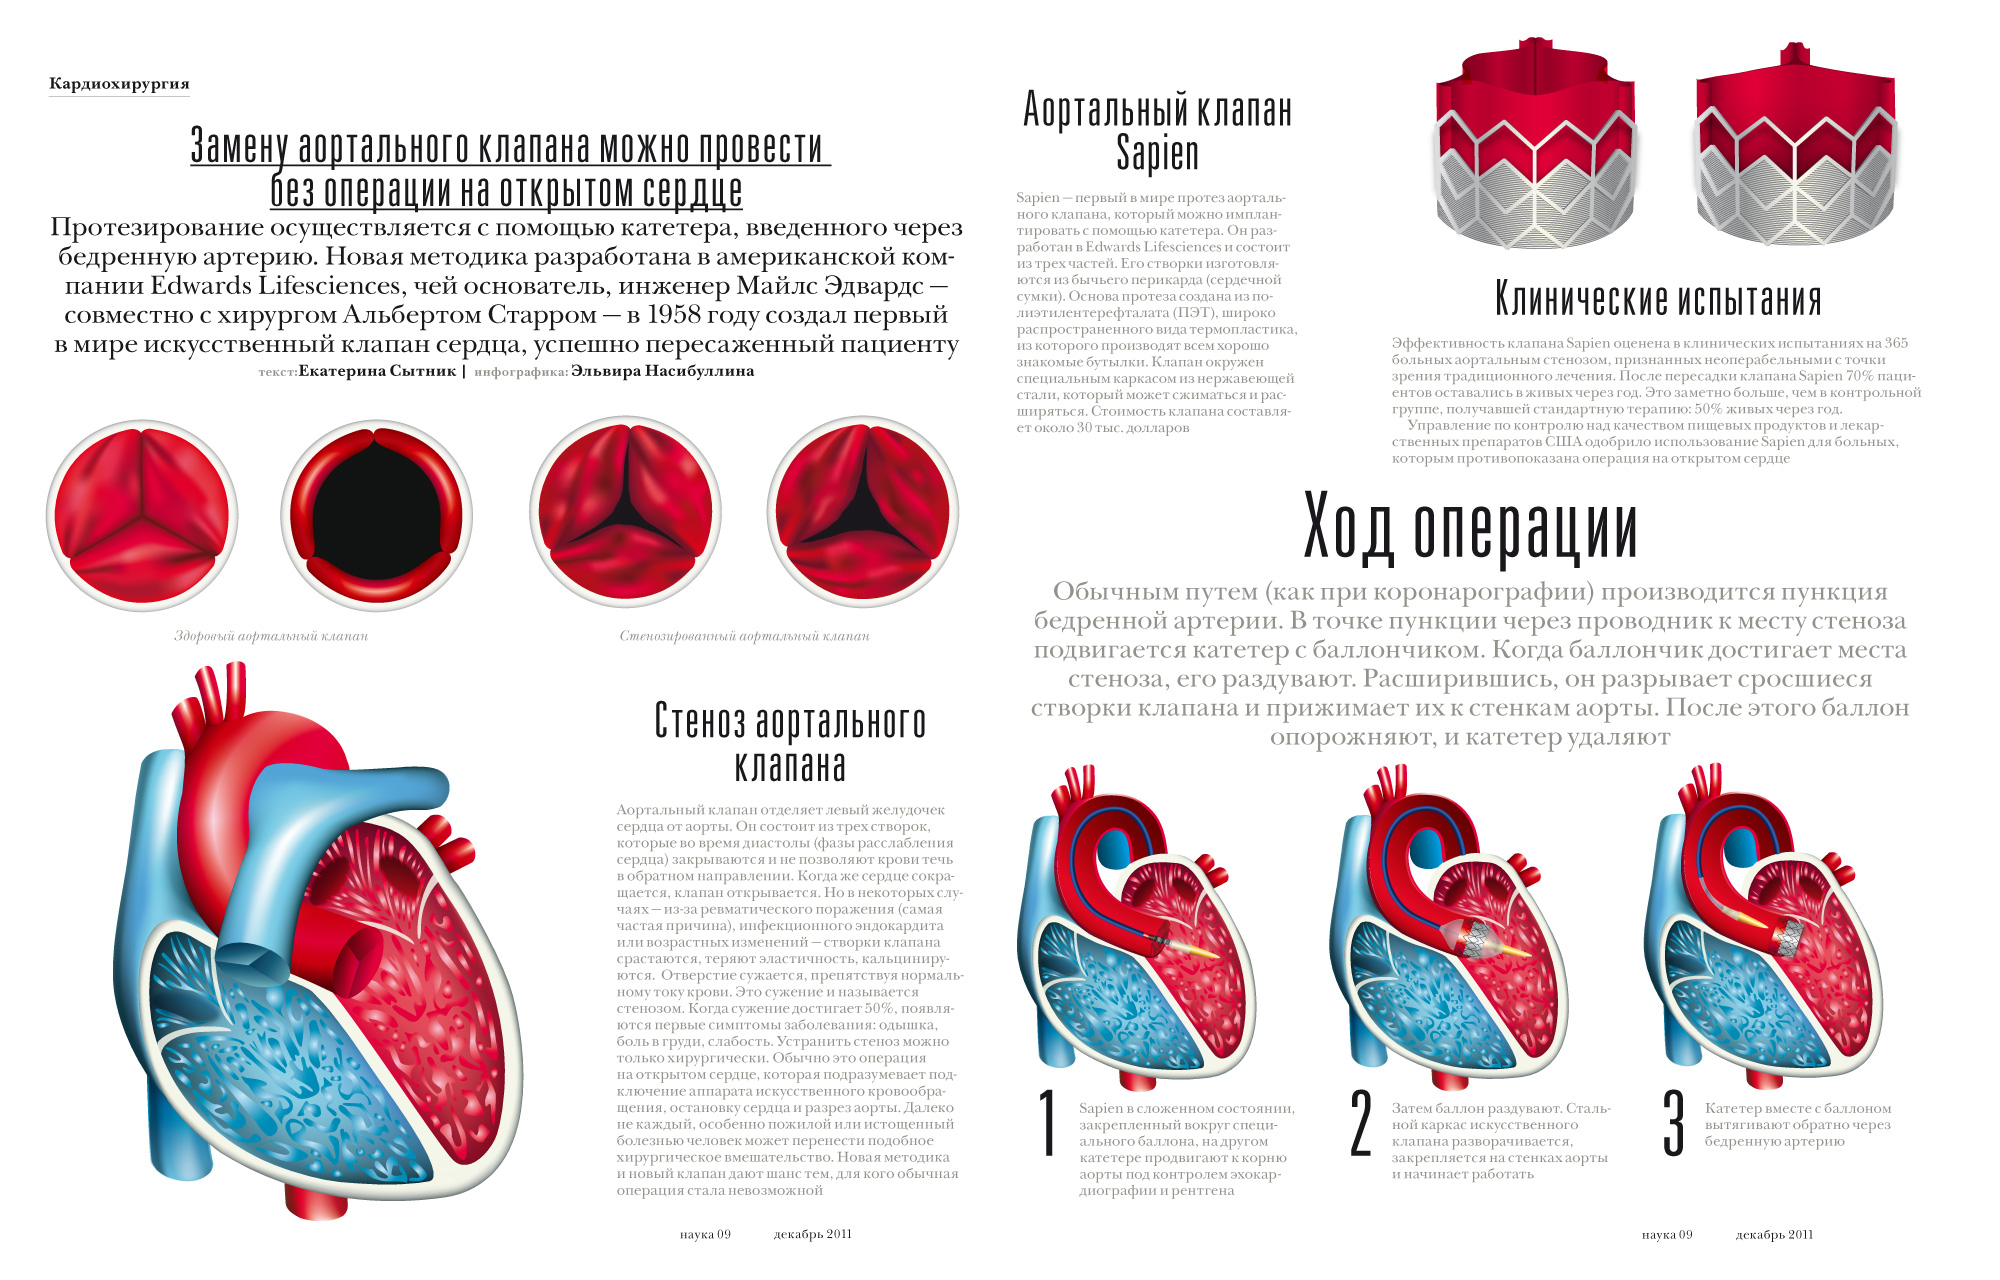 Аортальный клапан сердца операция